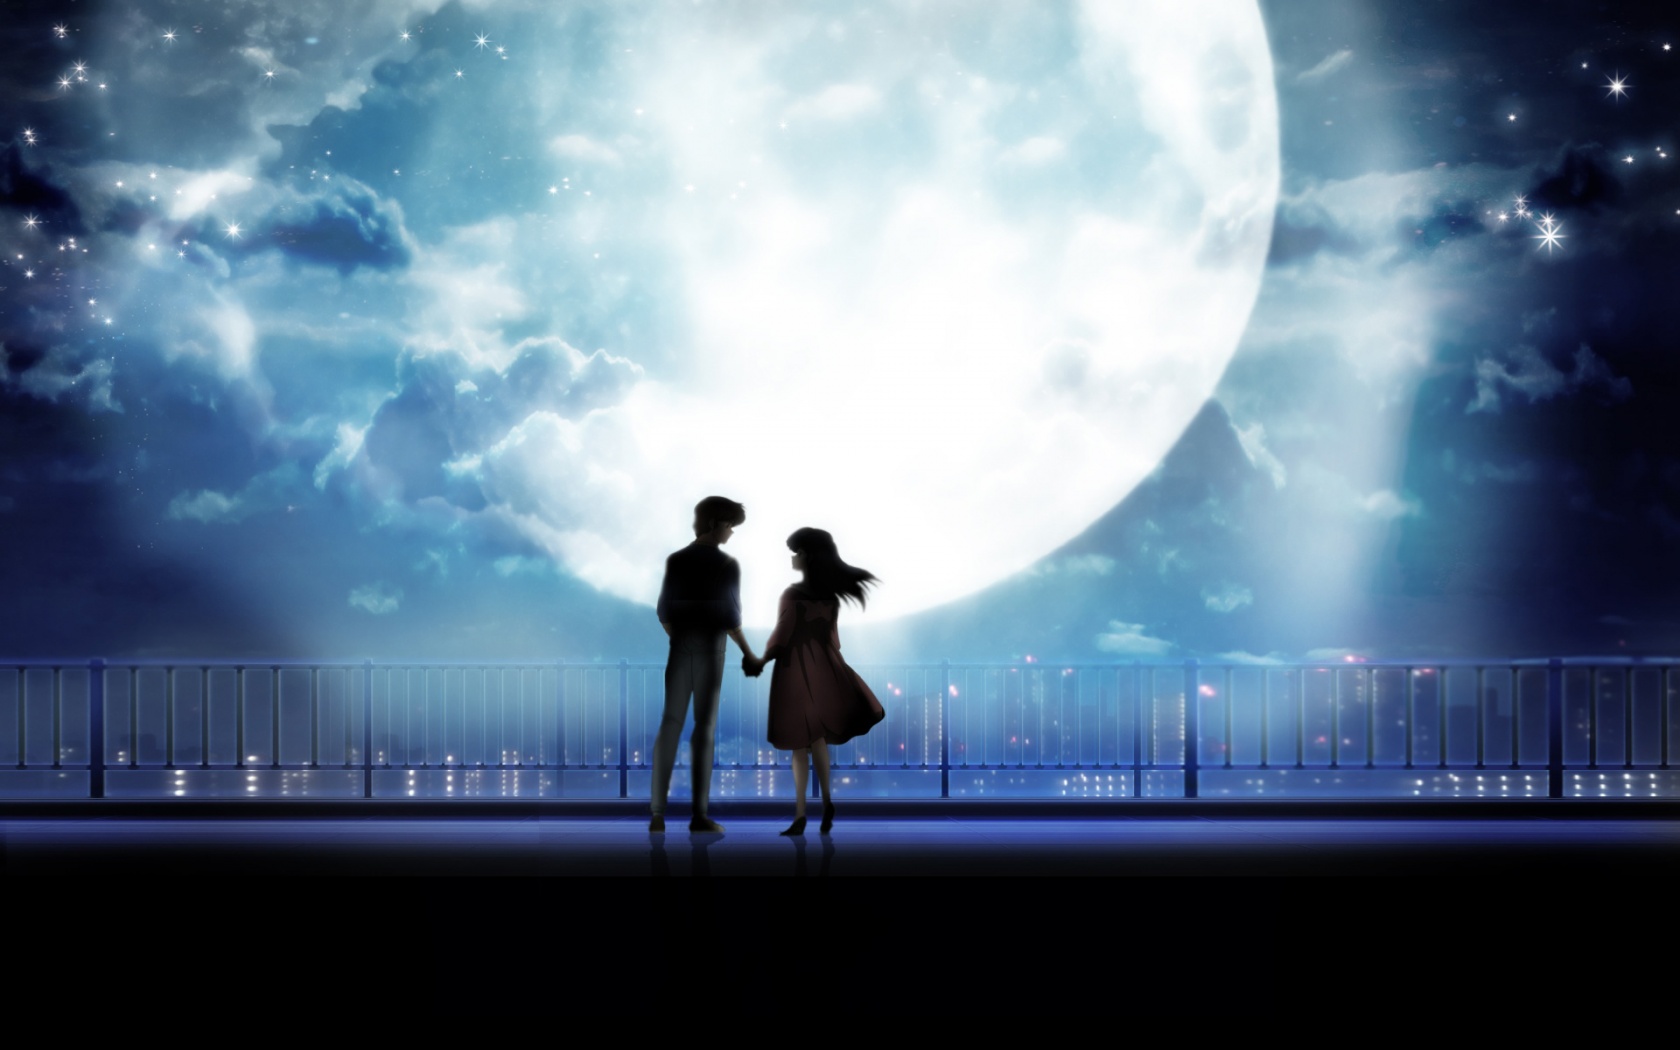 Anime đôi tay nắm tay ánh trăng miễn phí đem đến bầu không khí của sự lãng mạn và tình cảm. Hãy cùng đi dạo dưới ánh trăng rực rỡ và tận hưởng những giây phút ngọt ngào trong Anime này.